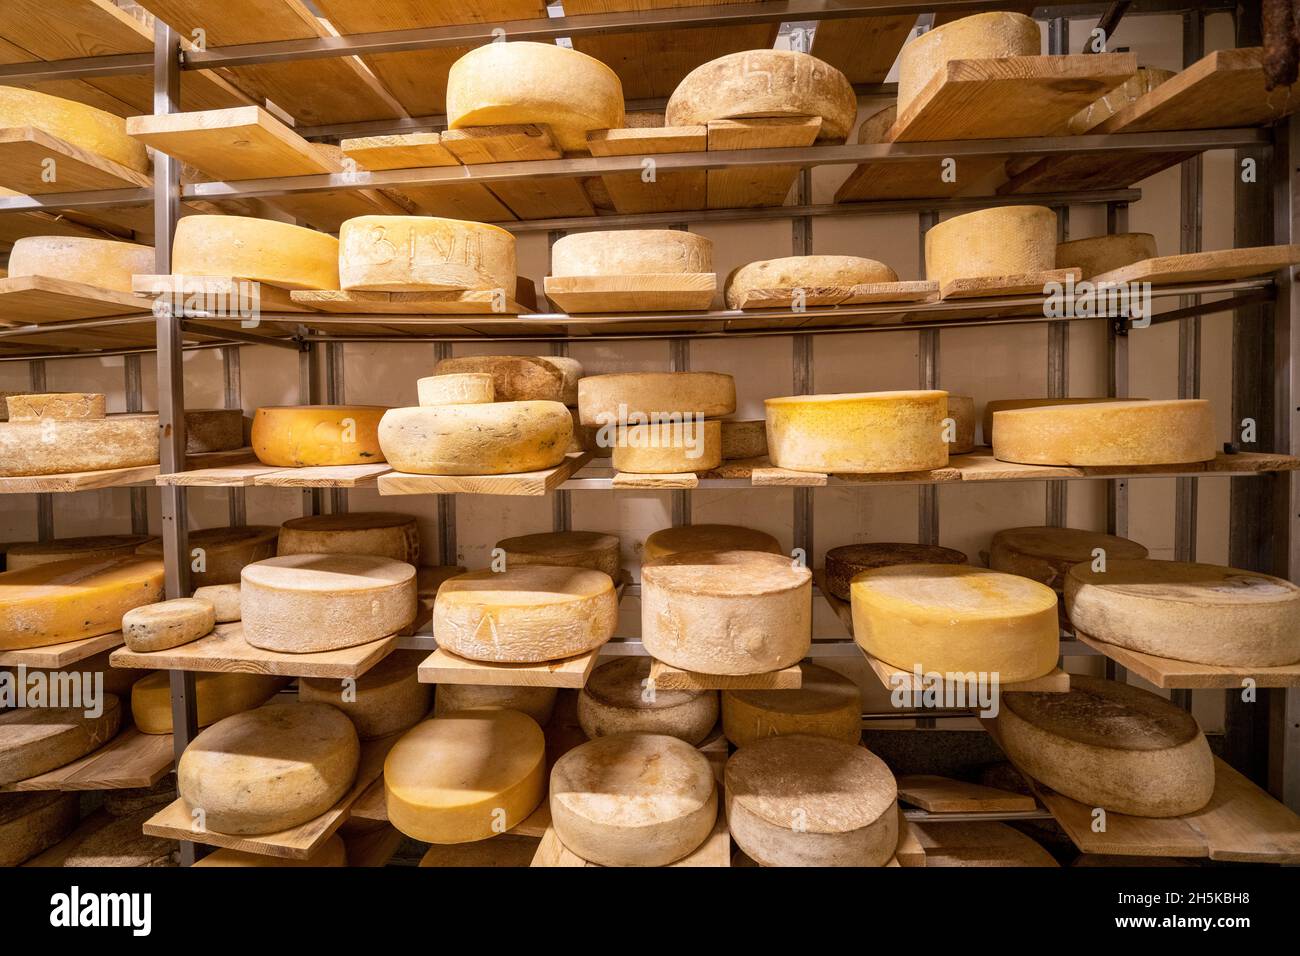 Ruote di formaggio fresco in un deposito di latte nella contea di Covasna, Romania; Covasana, Transilvania, Romania Foto Stock